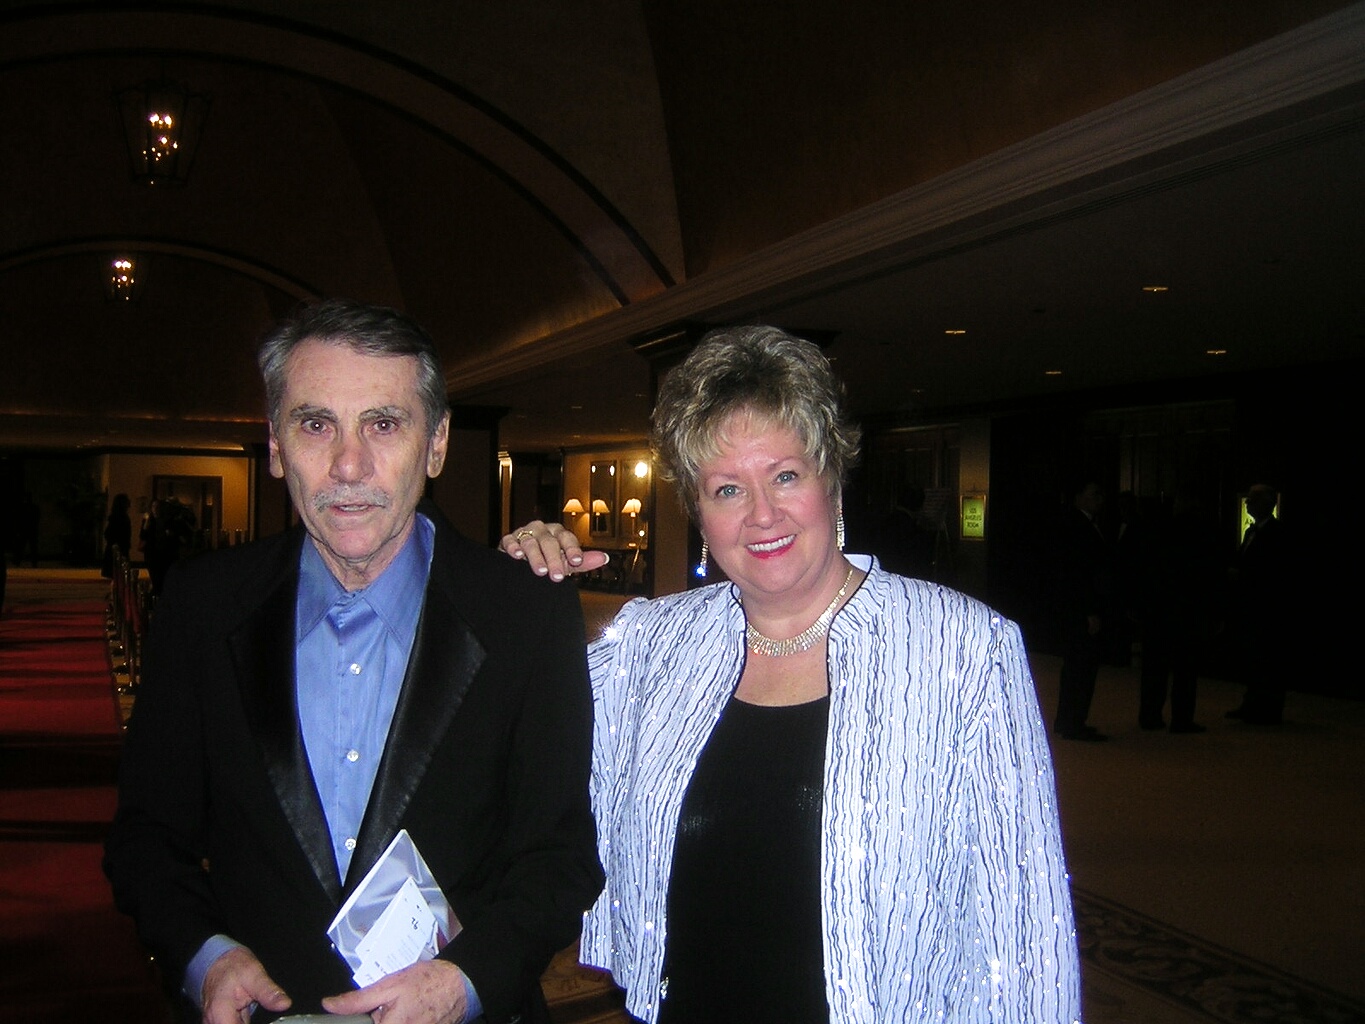 Gary Shusett and Glessna Coisson